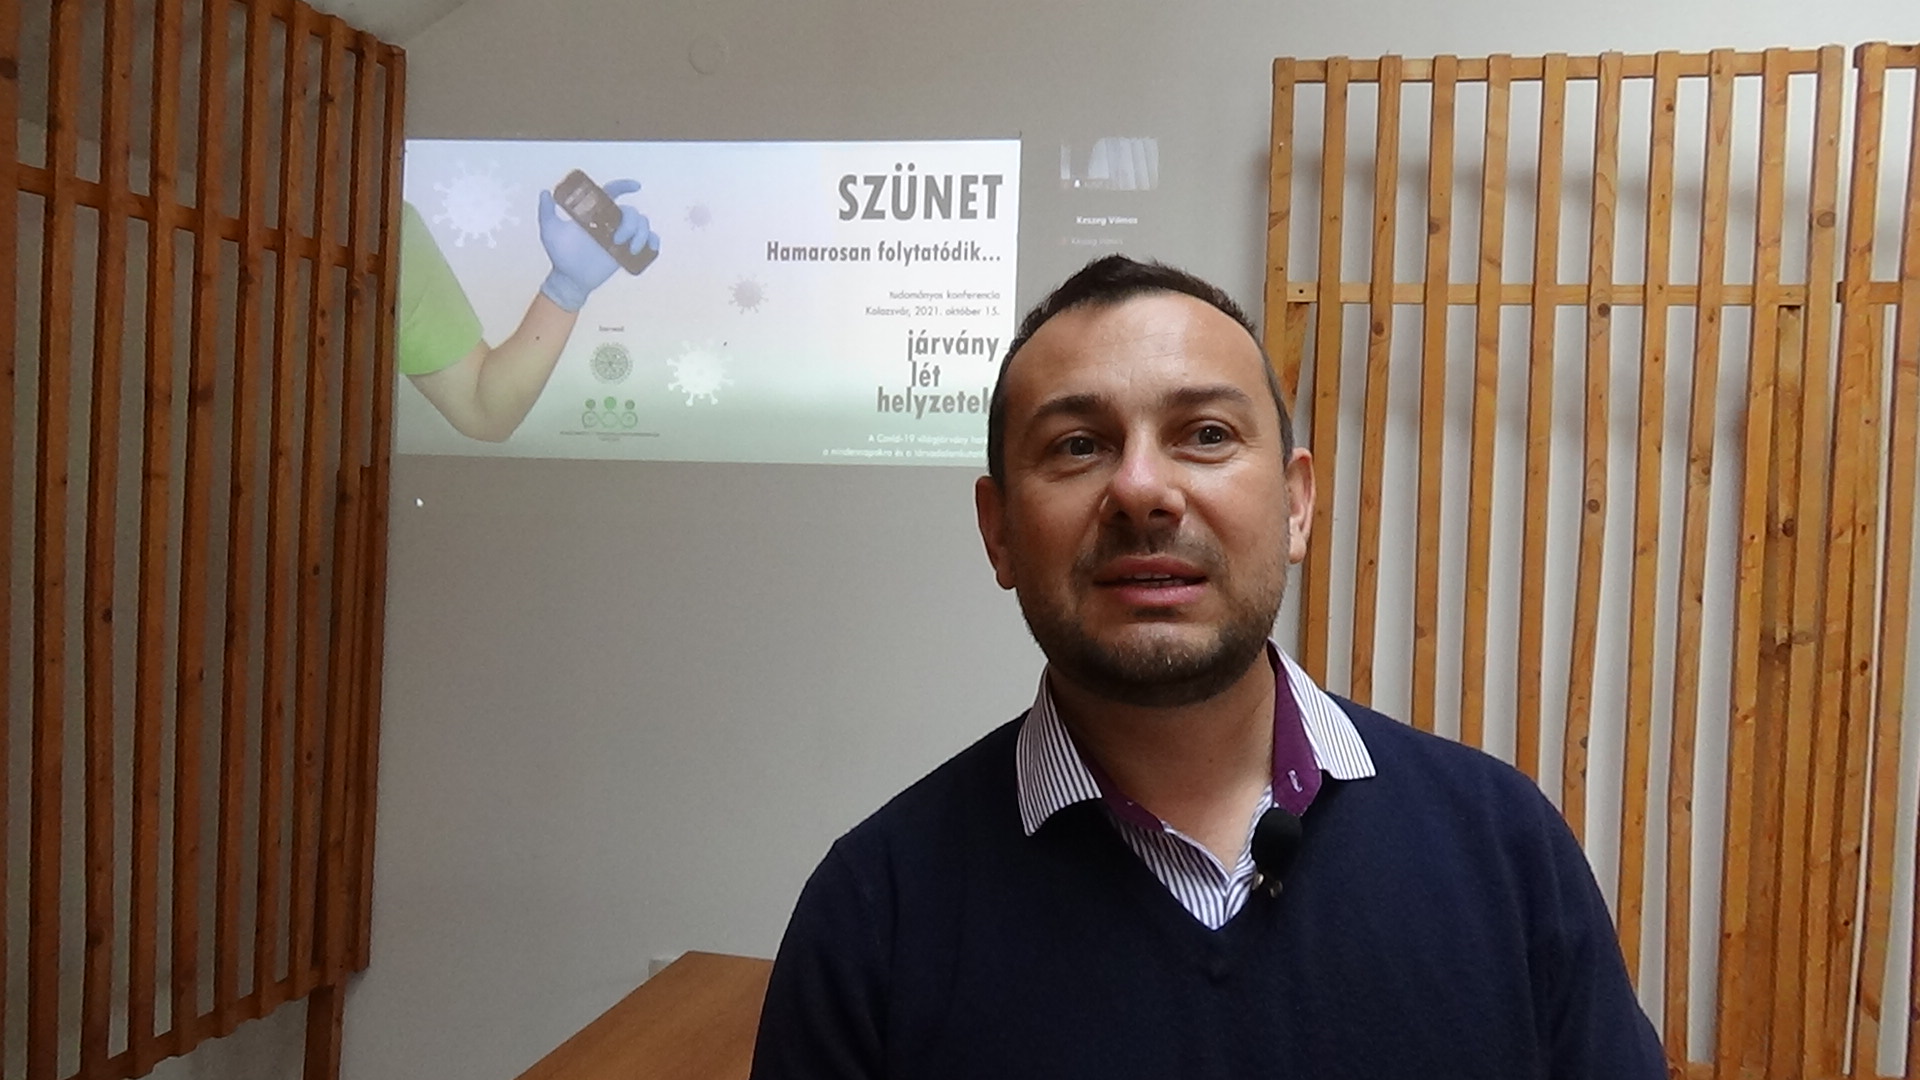 VIDEÓINTERJÚ – Vajda András: a koronavírus kapcsán törésvonal tapasztalható az emberek között